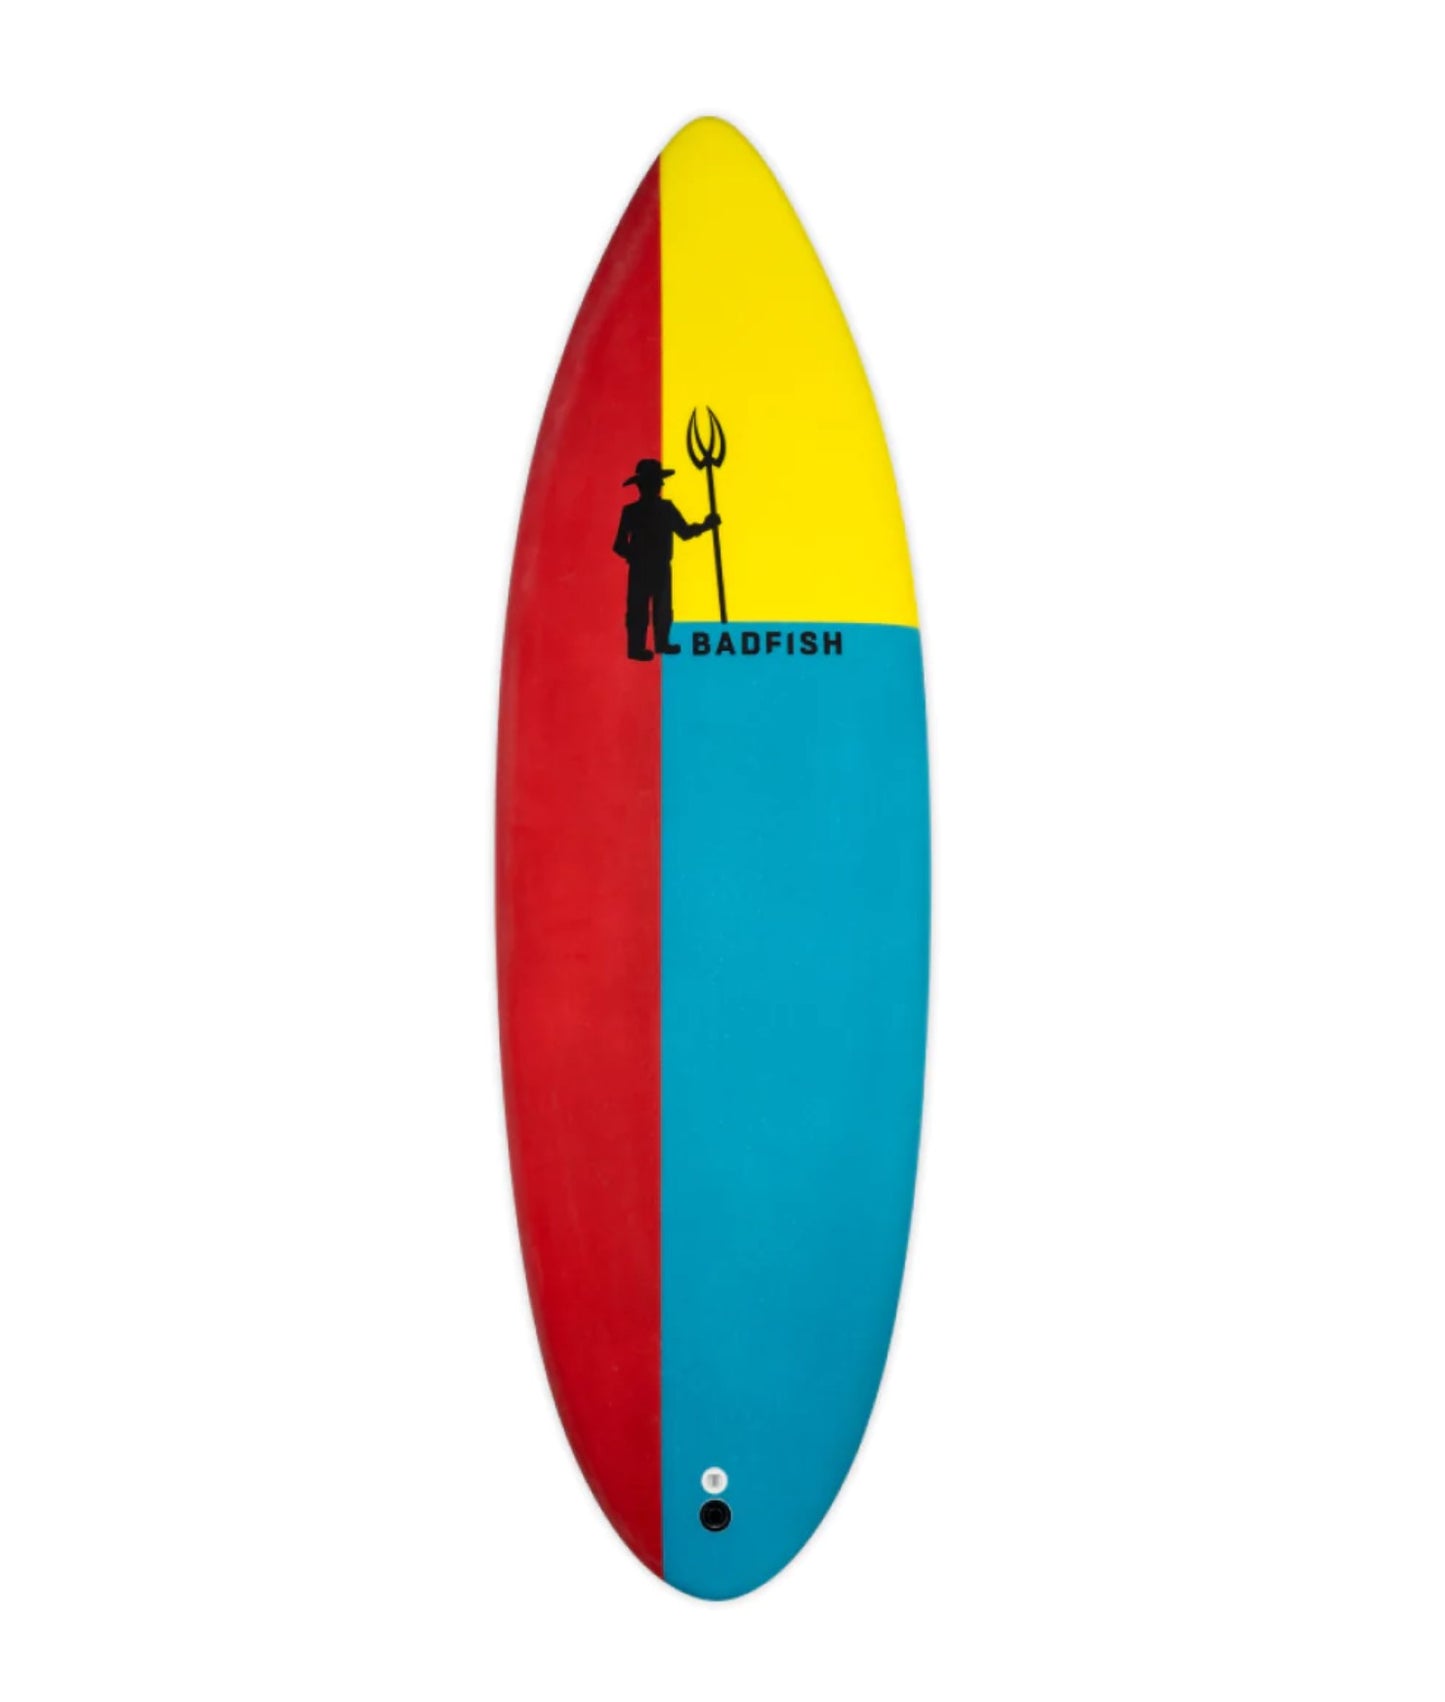 Badfish wave farmer surf board